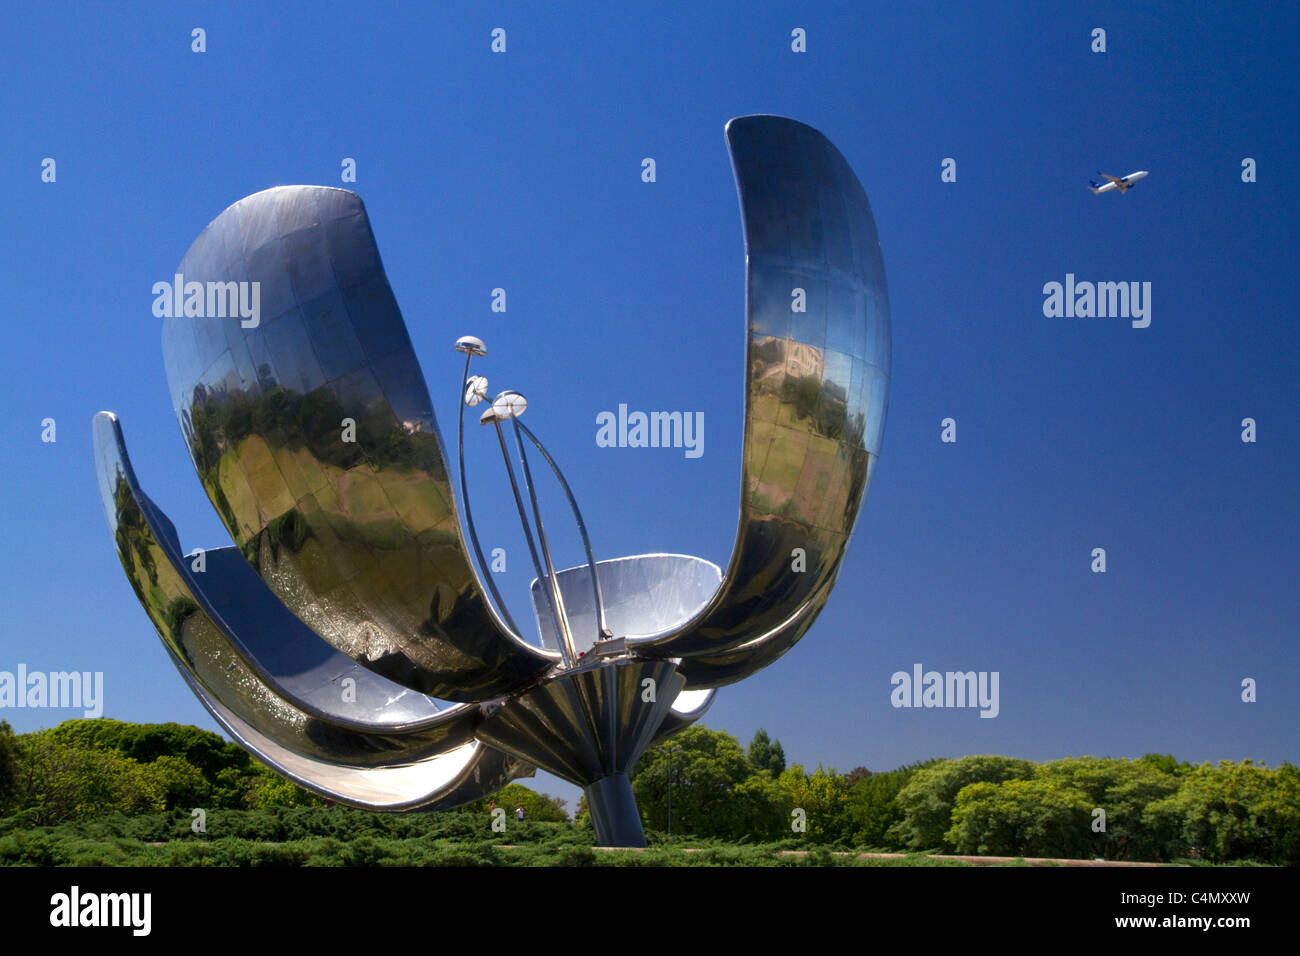 Floralis Generica ist eine Skulptur aus Stahl und Aluminium befindet sich in Plaza de Las Naciones Unidas in Buenos Aires, Argentinien. Stockfoto